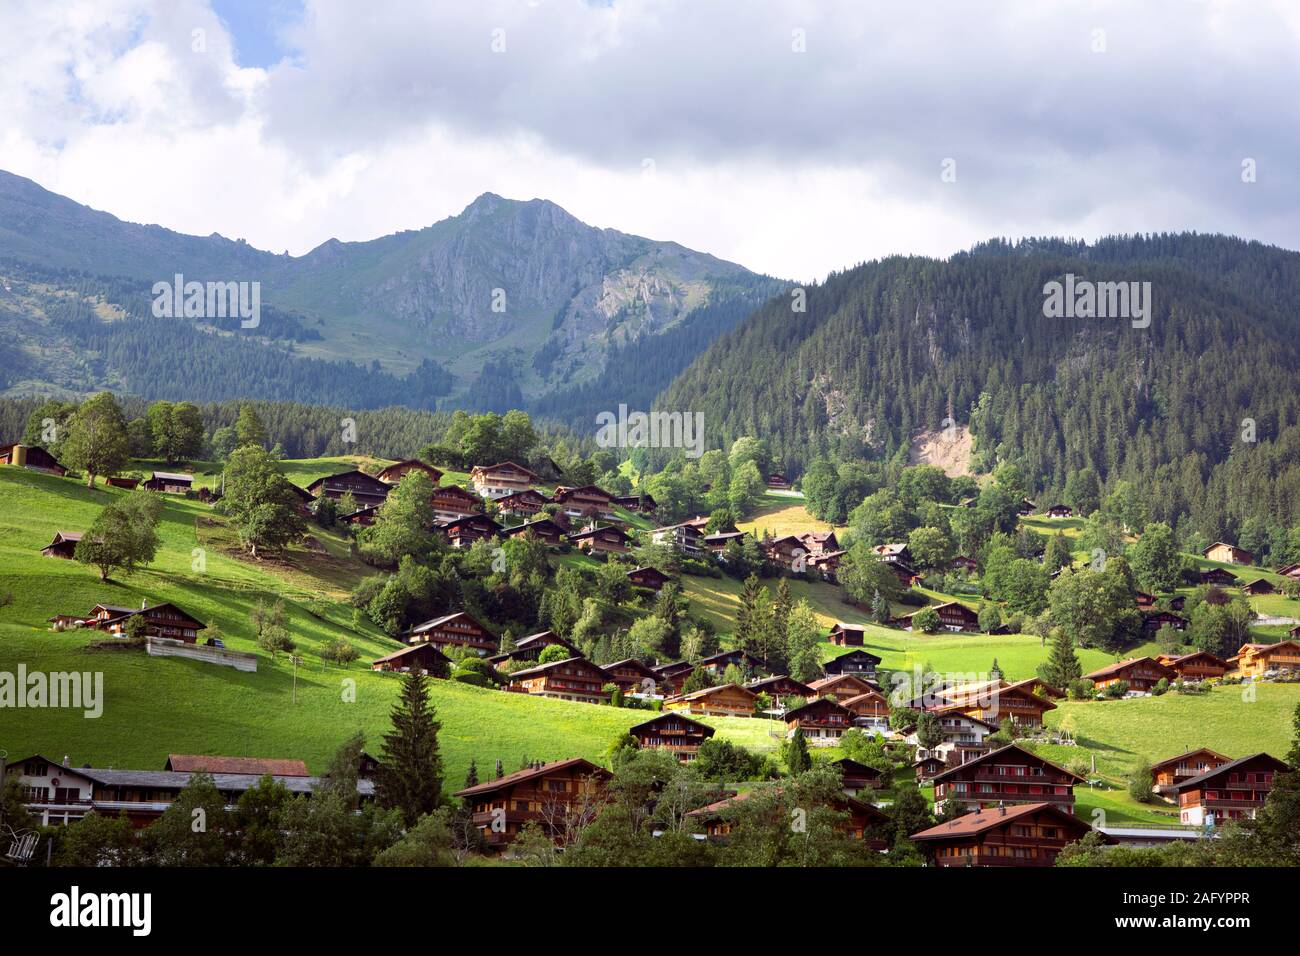 Abrechnung der traditionellen Schweizer Häuser im Tal. Landschaft, grüne Wiesen, alpine Landschaft. Holzhütten der Idylle Dorf. Schweiz Stockfoto